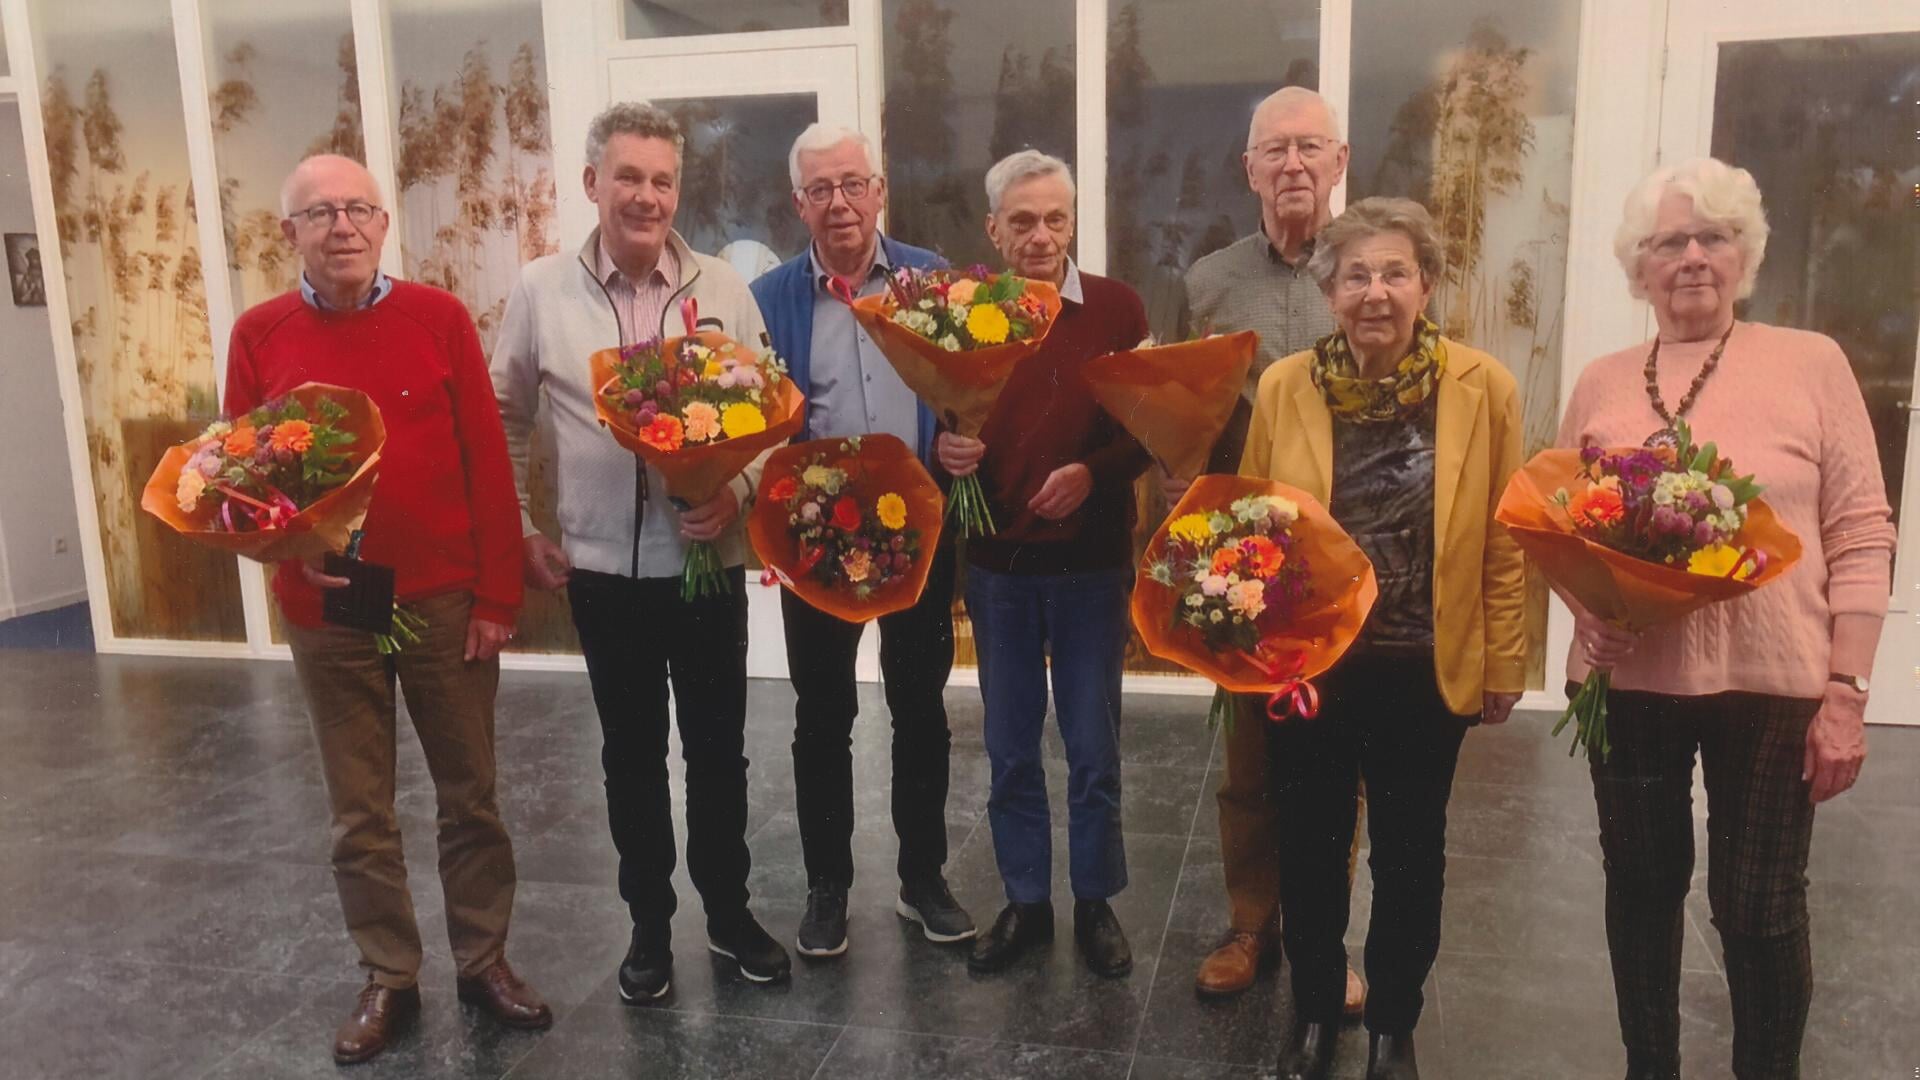 De jubilarissen Jan van de Ven, Theo Weghorst, Piet Wagenaar, Mariet Willemsen en Ans Oosterink. Afscheid namen Nol van den Brink en Harry van Merm. (foto: Harrie de Beijer)